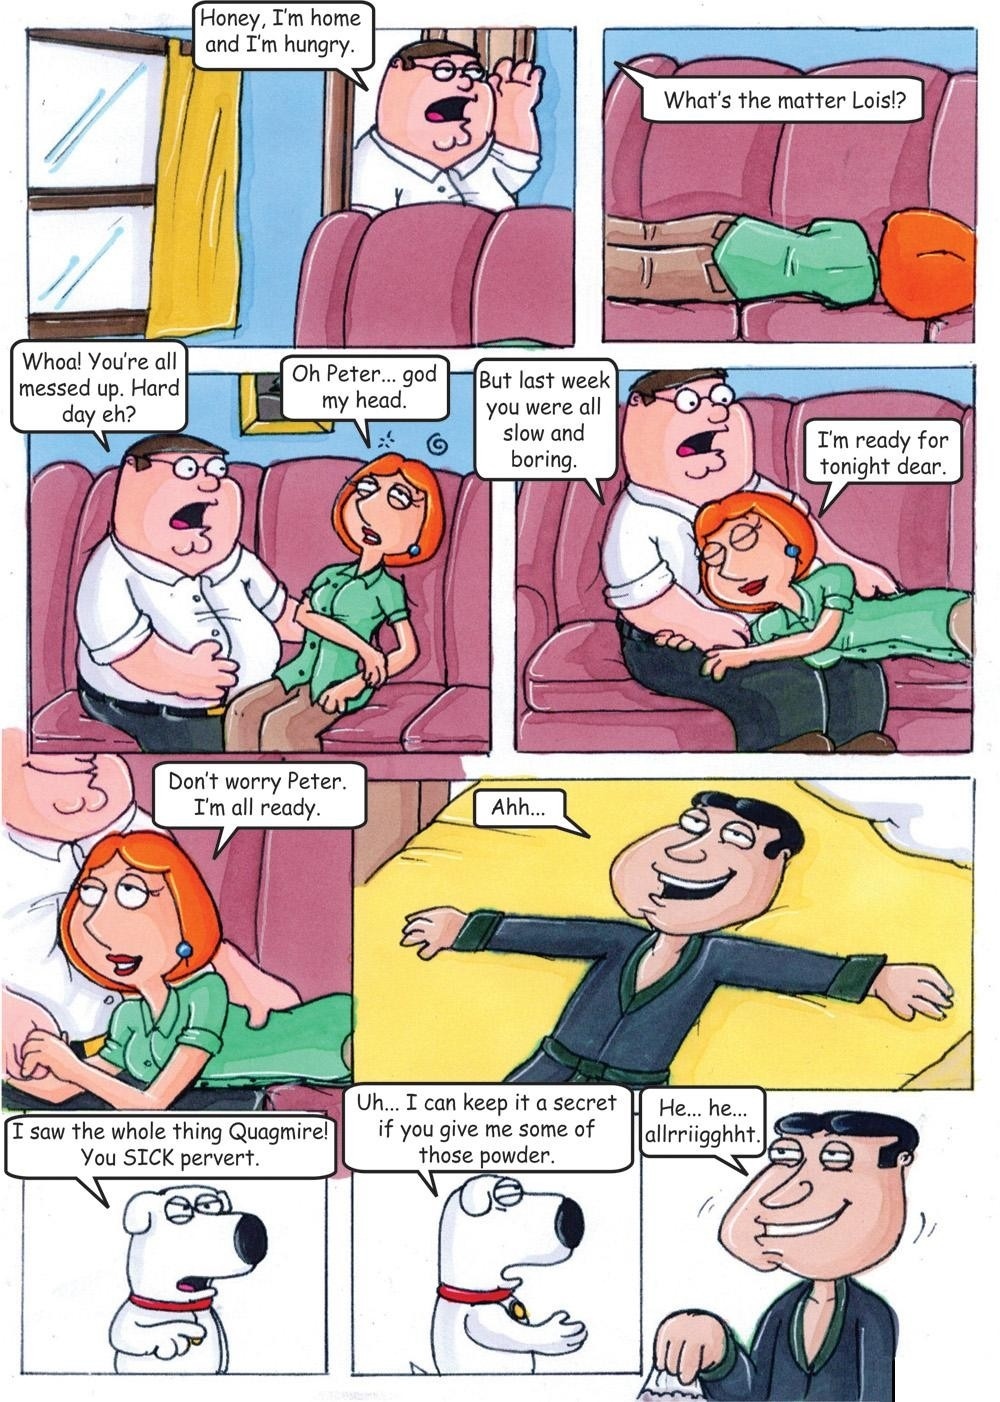 Quagmire Porn - Family Guy- The Lois and Quagmire Affair - Porn Comics Galleries